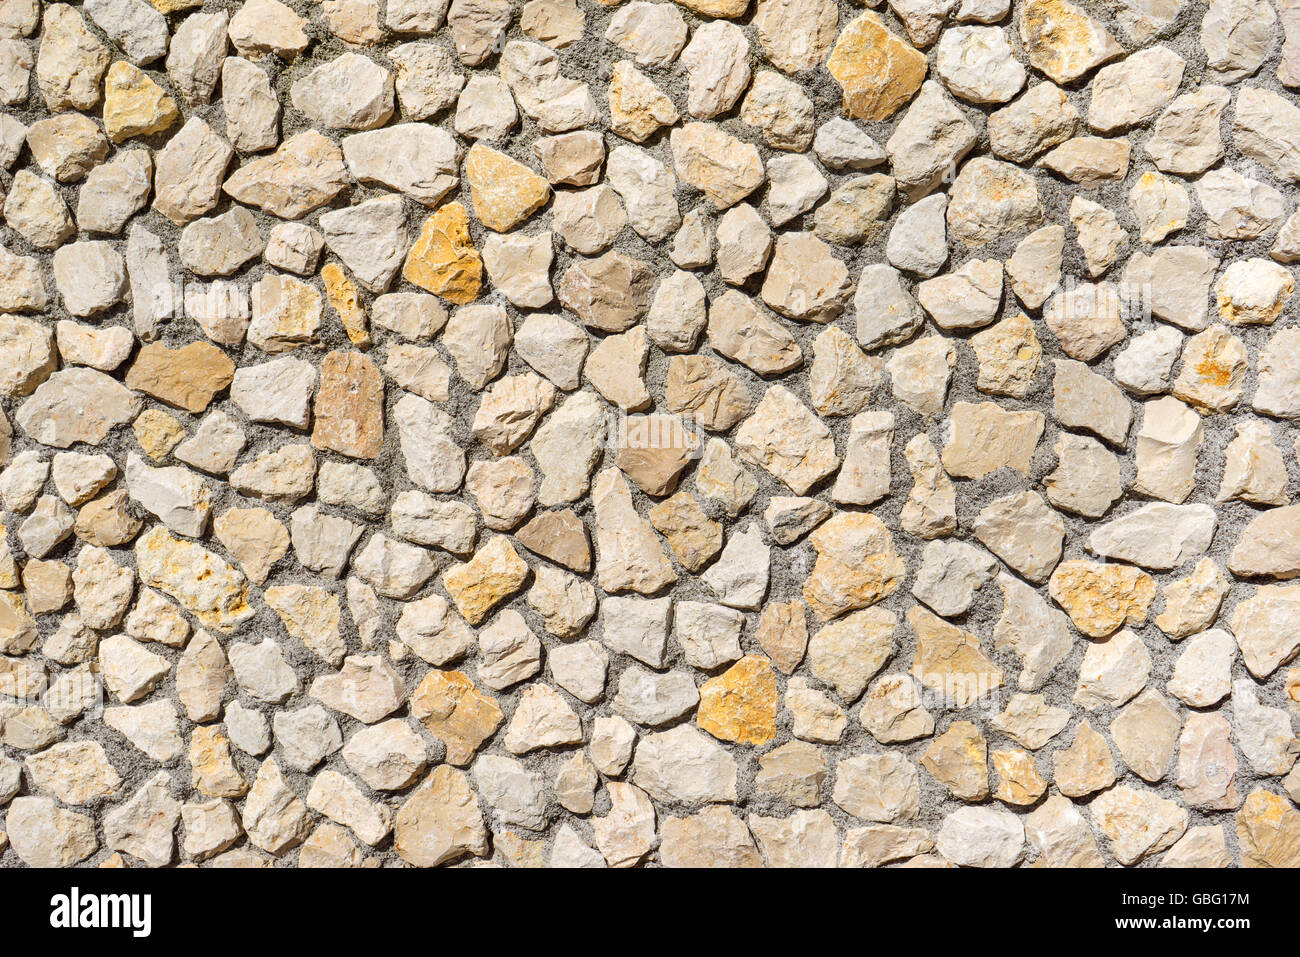 Muro de piedra natural de color beige y amarillo piedras Foto de stock